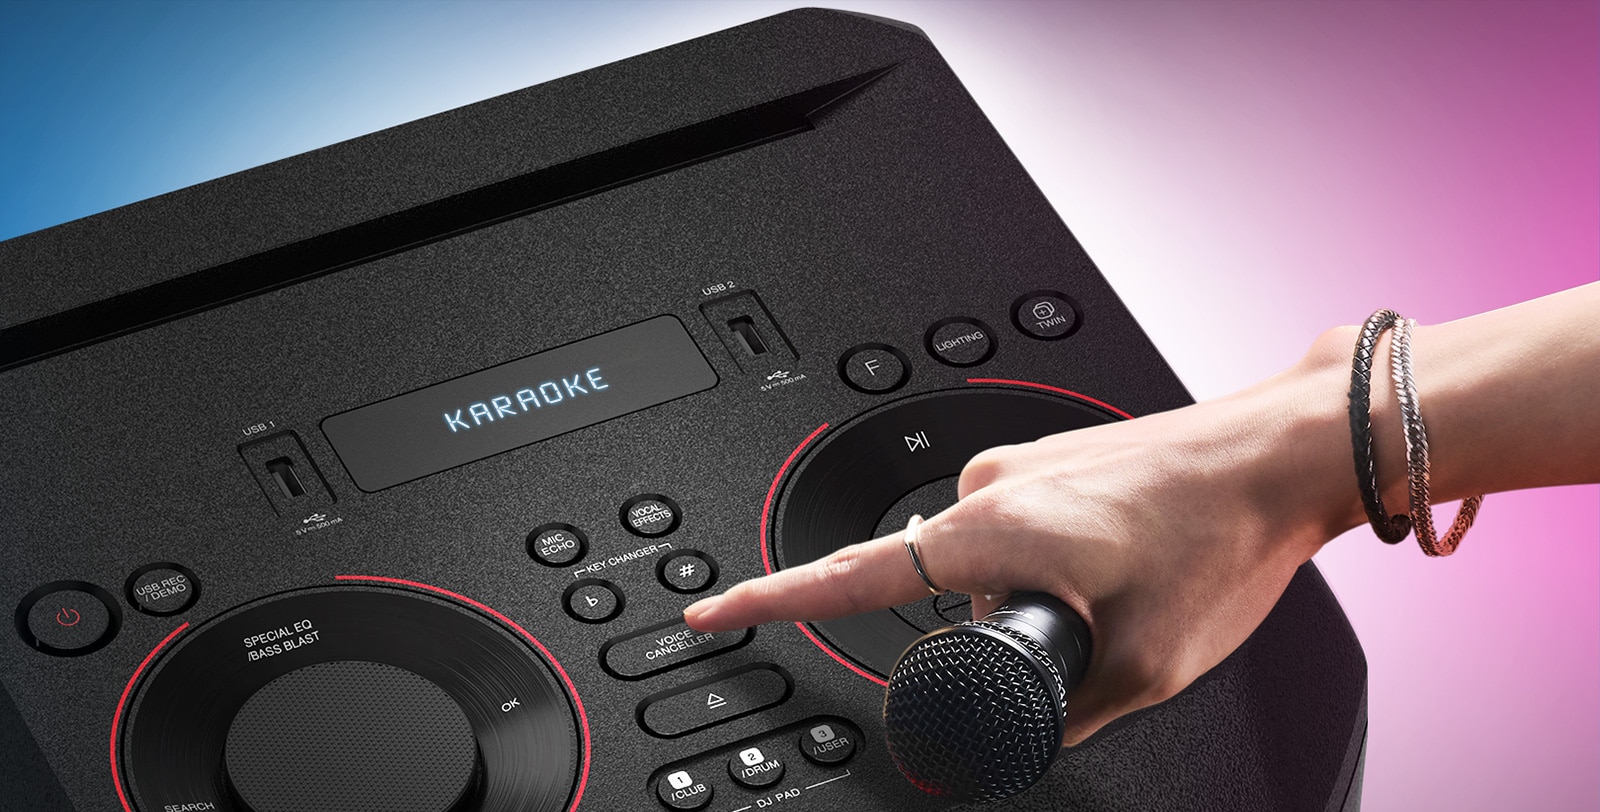 Ένα χέρι που κρατά ένα μικρόφωνο και προσπαθεί να πιέσει το κουμπί Ακύρωσης φωνής στο επάνω μέρος του LG XBOOM.